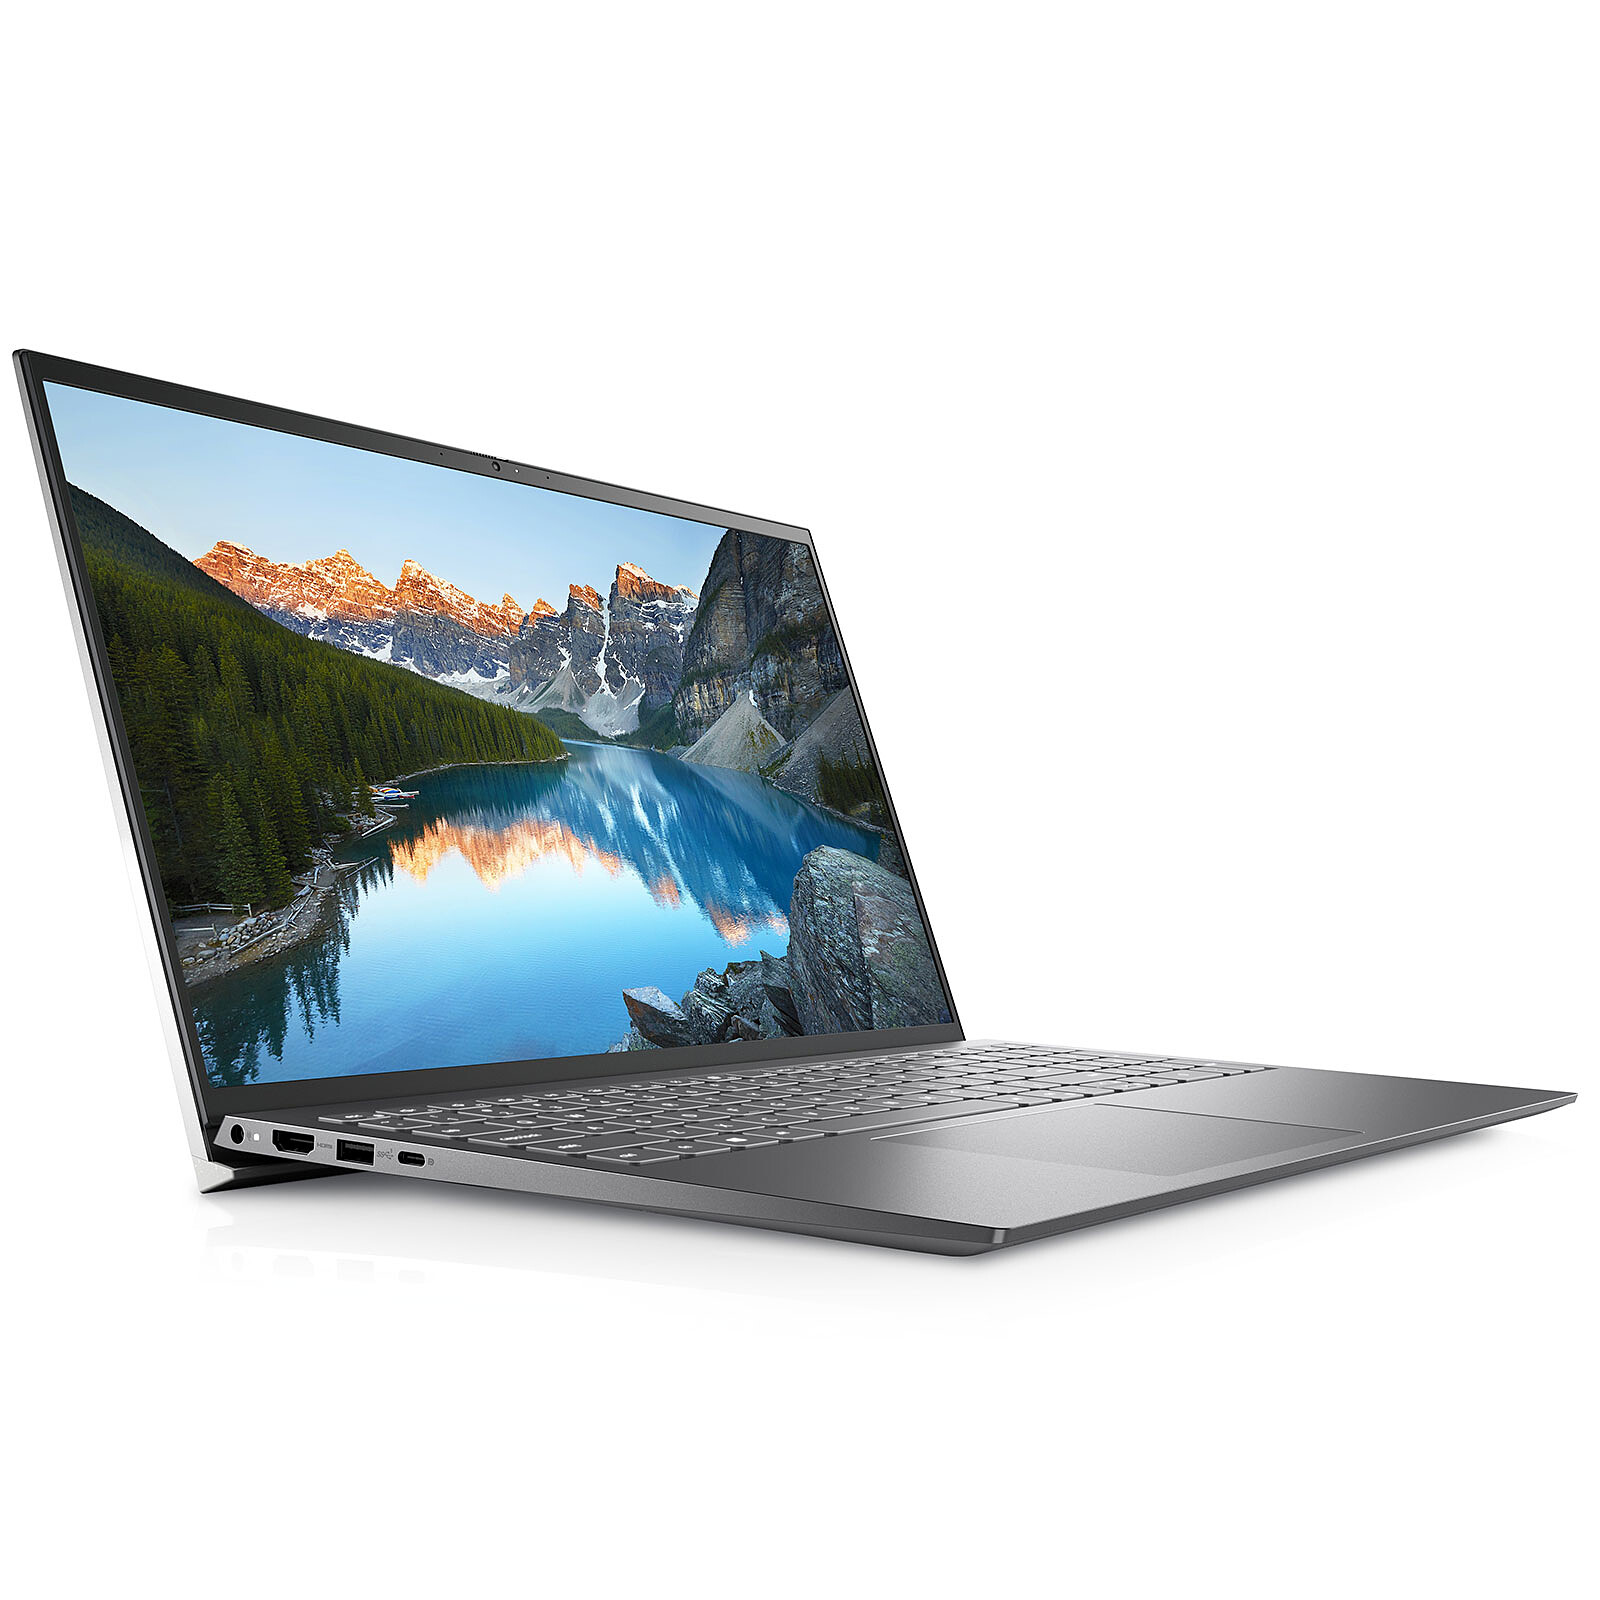 Dell Inspiron 15 5518-035 - PC portable - Garantie 3 ans LDLC